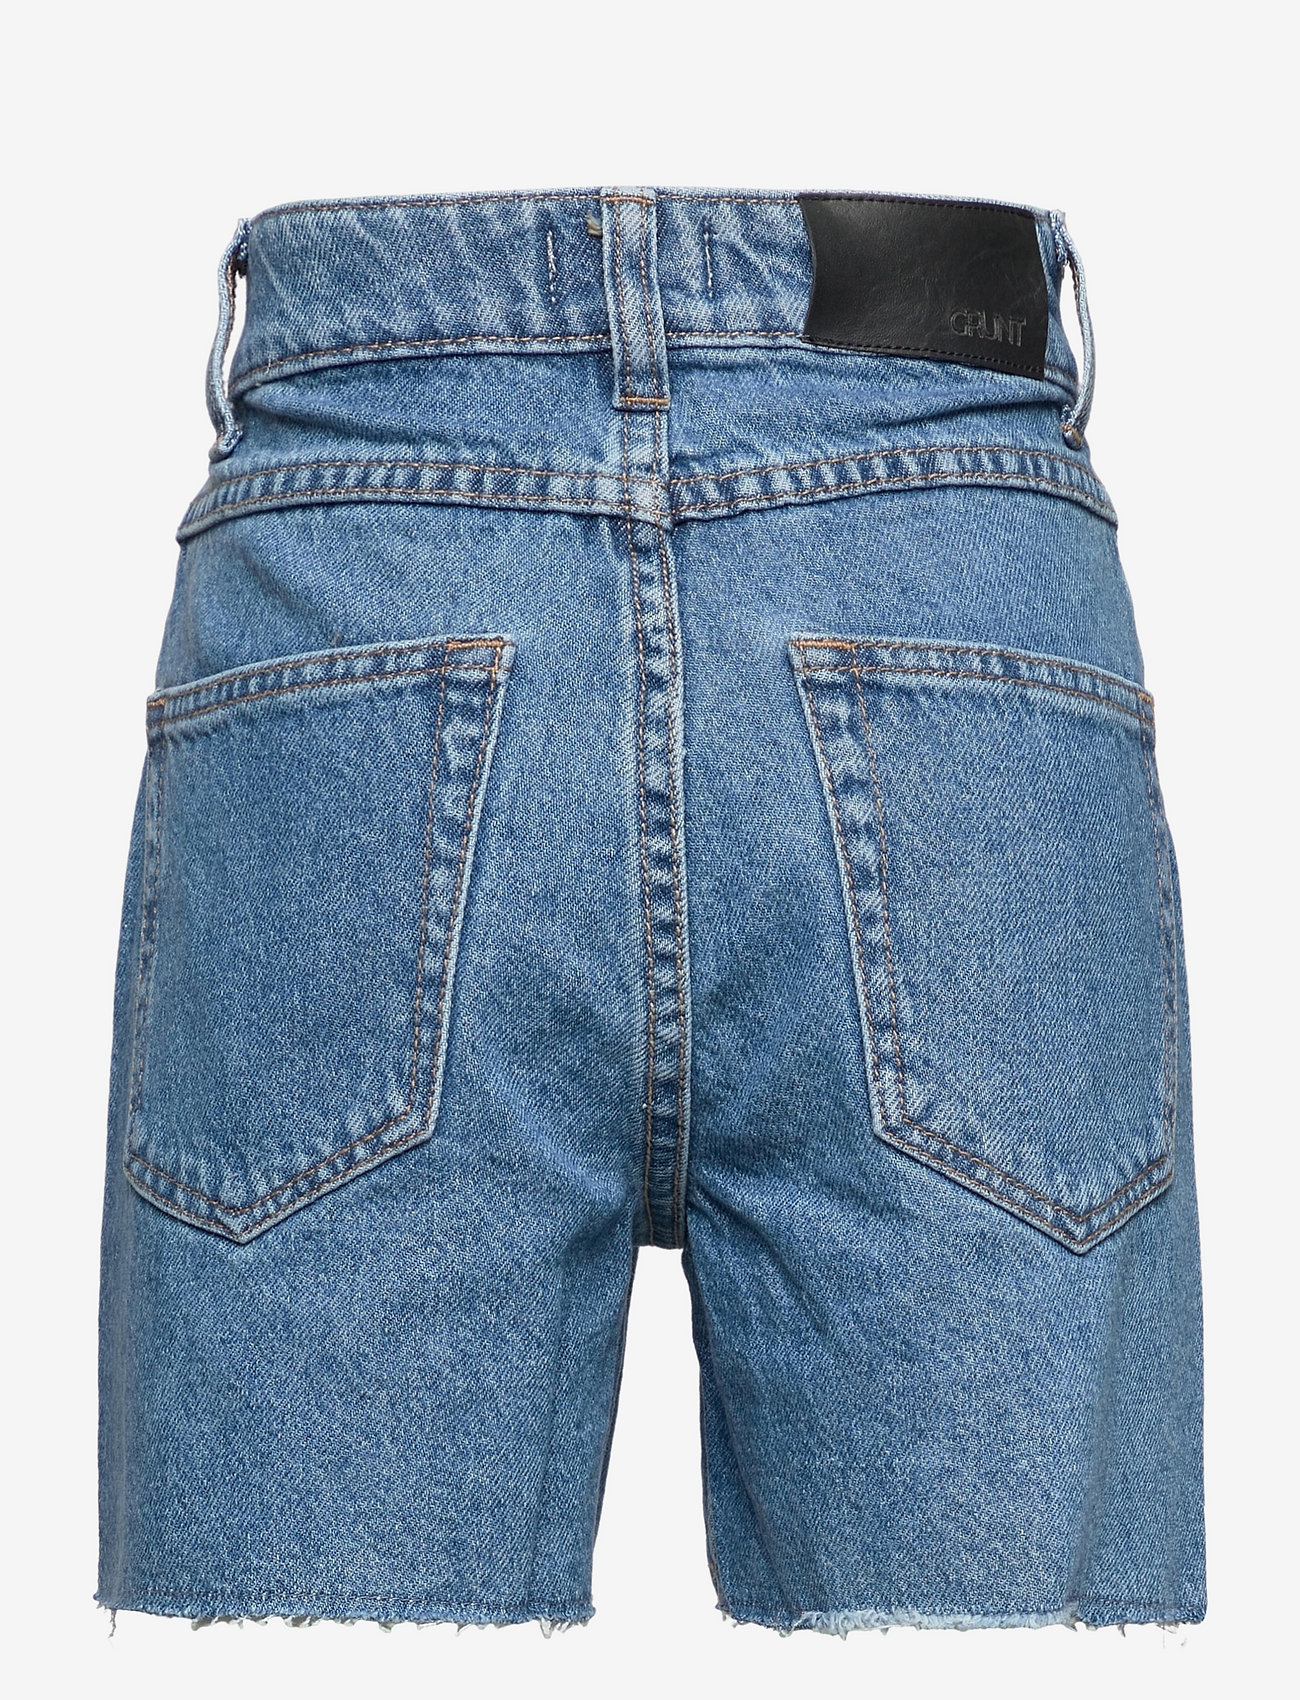 Grunt - 90s Shorts Premium Blue - džinsiniai šortai - premium blue - 1